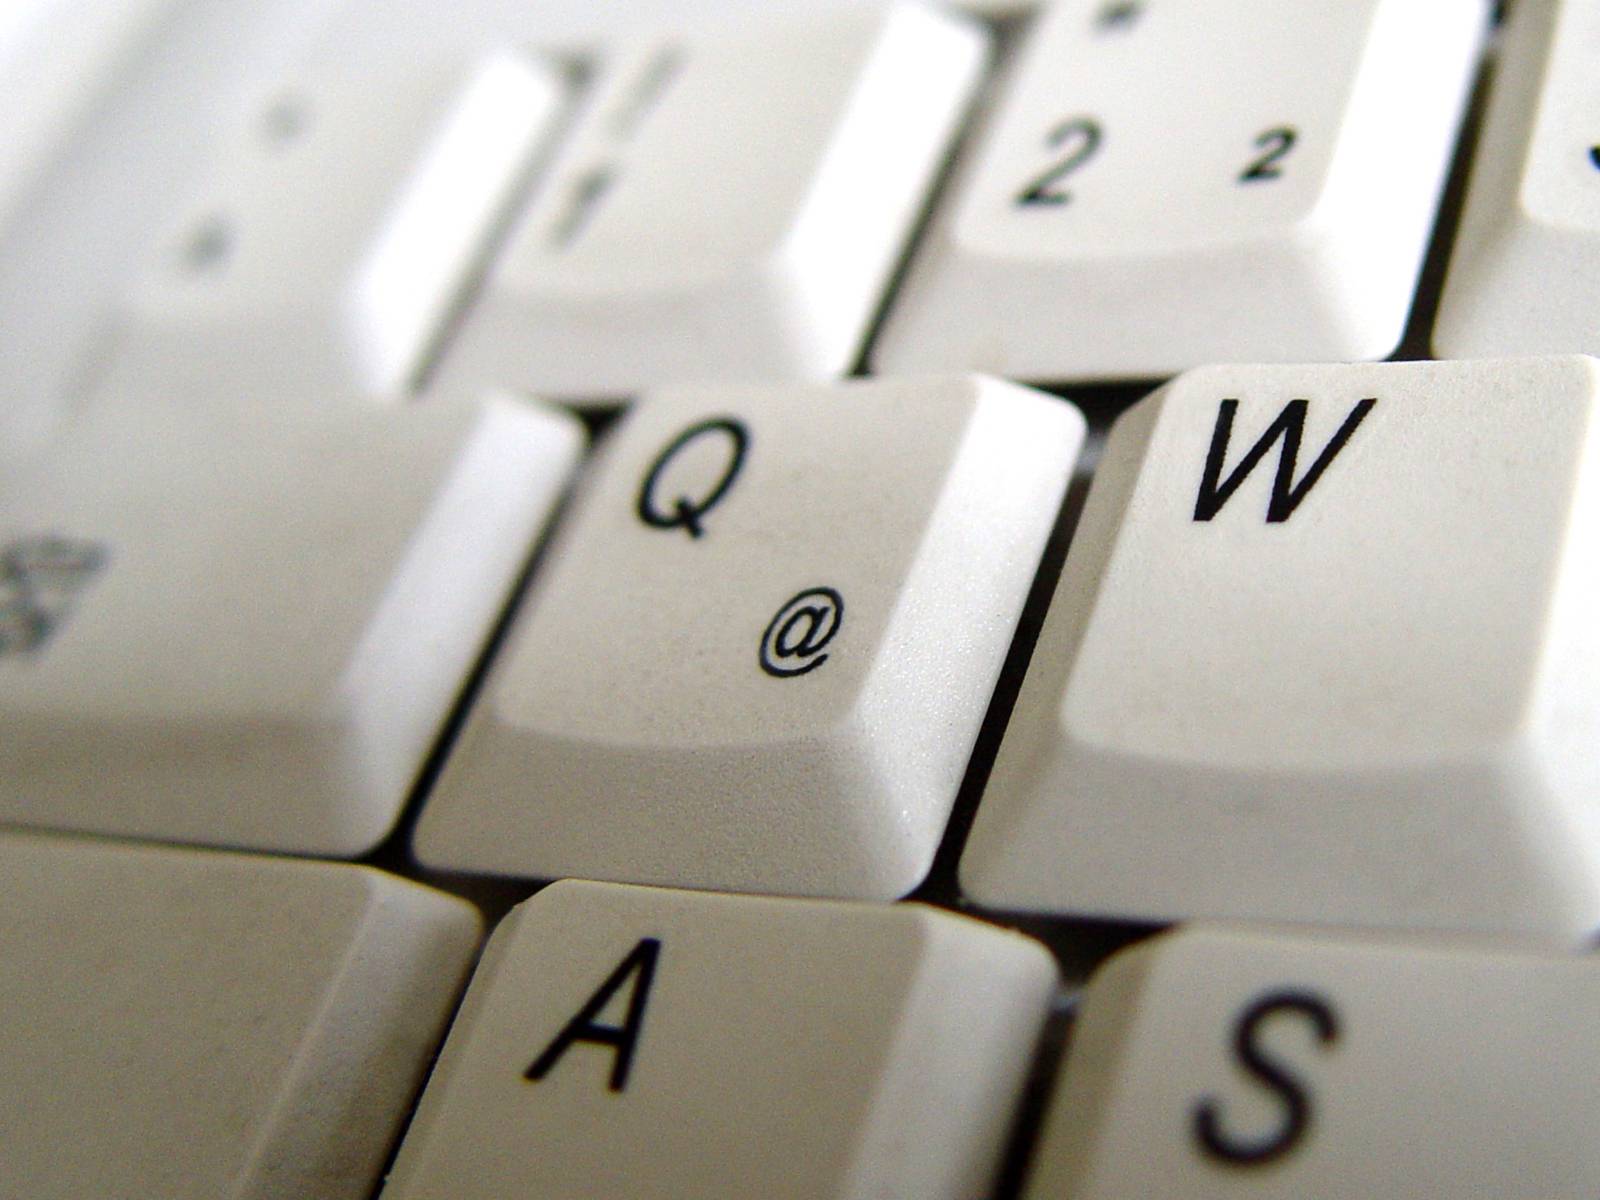 Ausschnitt einer Tastatur, im Zentrum des Bildes steht die Taste "Q"